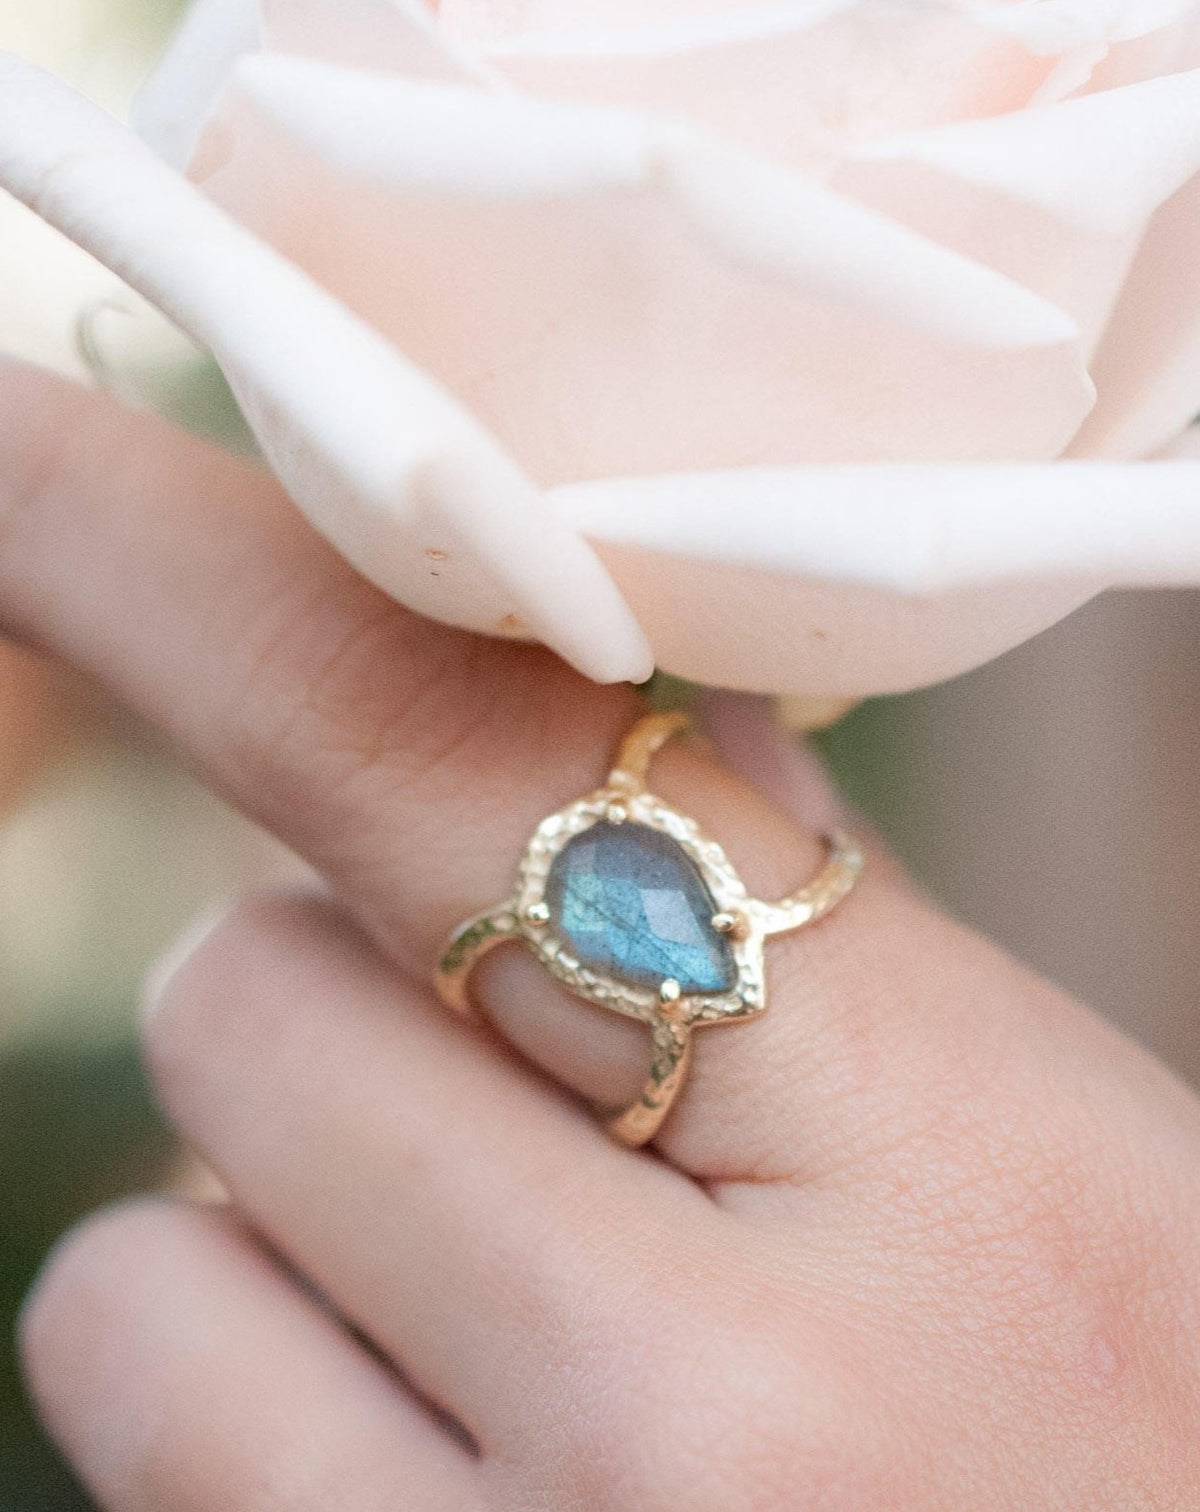 Labradorite Ring * Hammered Band * Gold Ring * Statement Ring * Gemstone Ring * Pink * Wedding Ring * Organic Ring * Natural* BJR141